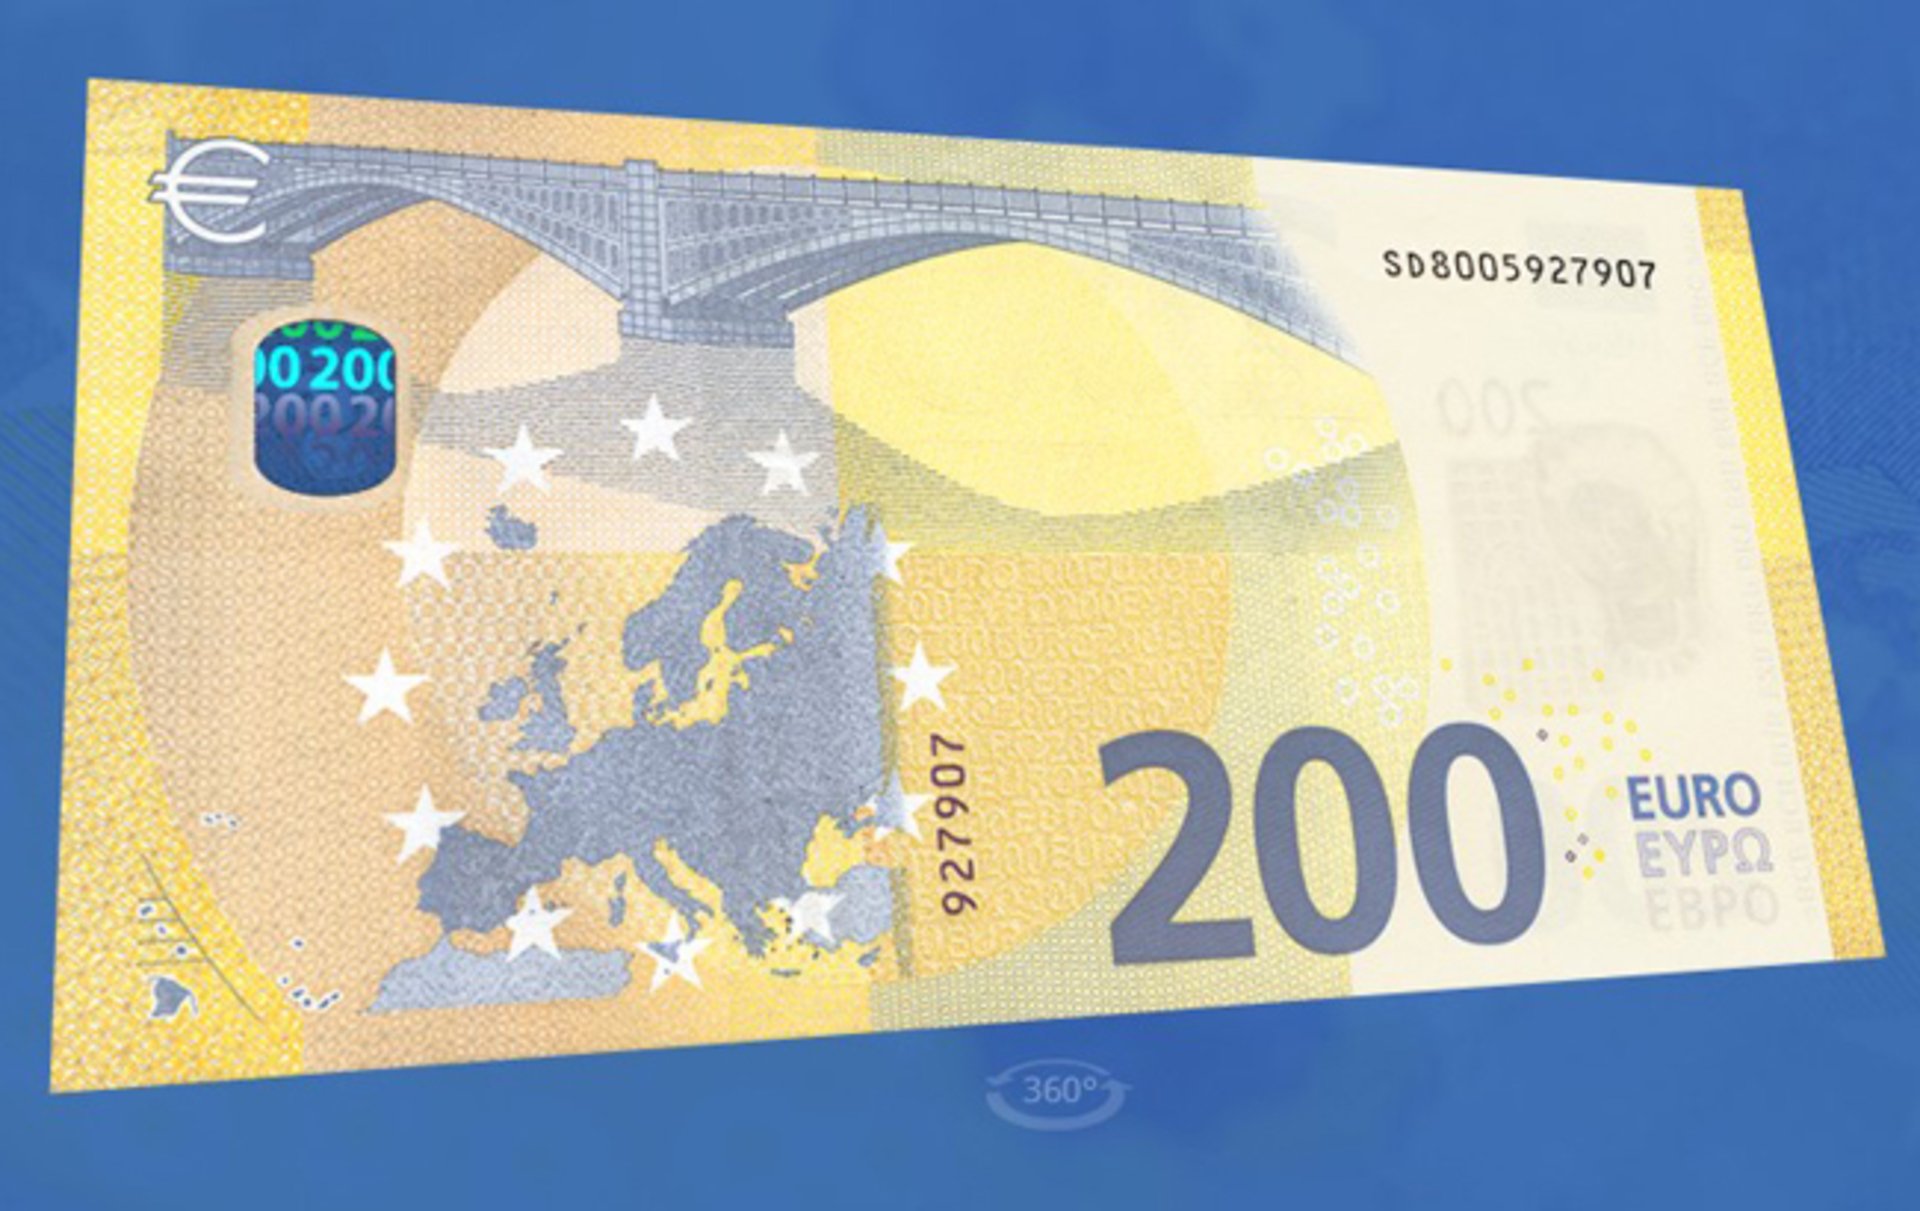 Евро старые купюры. Евро банкноты номинал 200. Новая купюра 100 евро. Банкнота 200 евро нового образца. Как выглядит 200 евро.